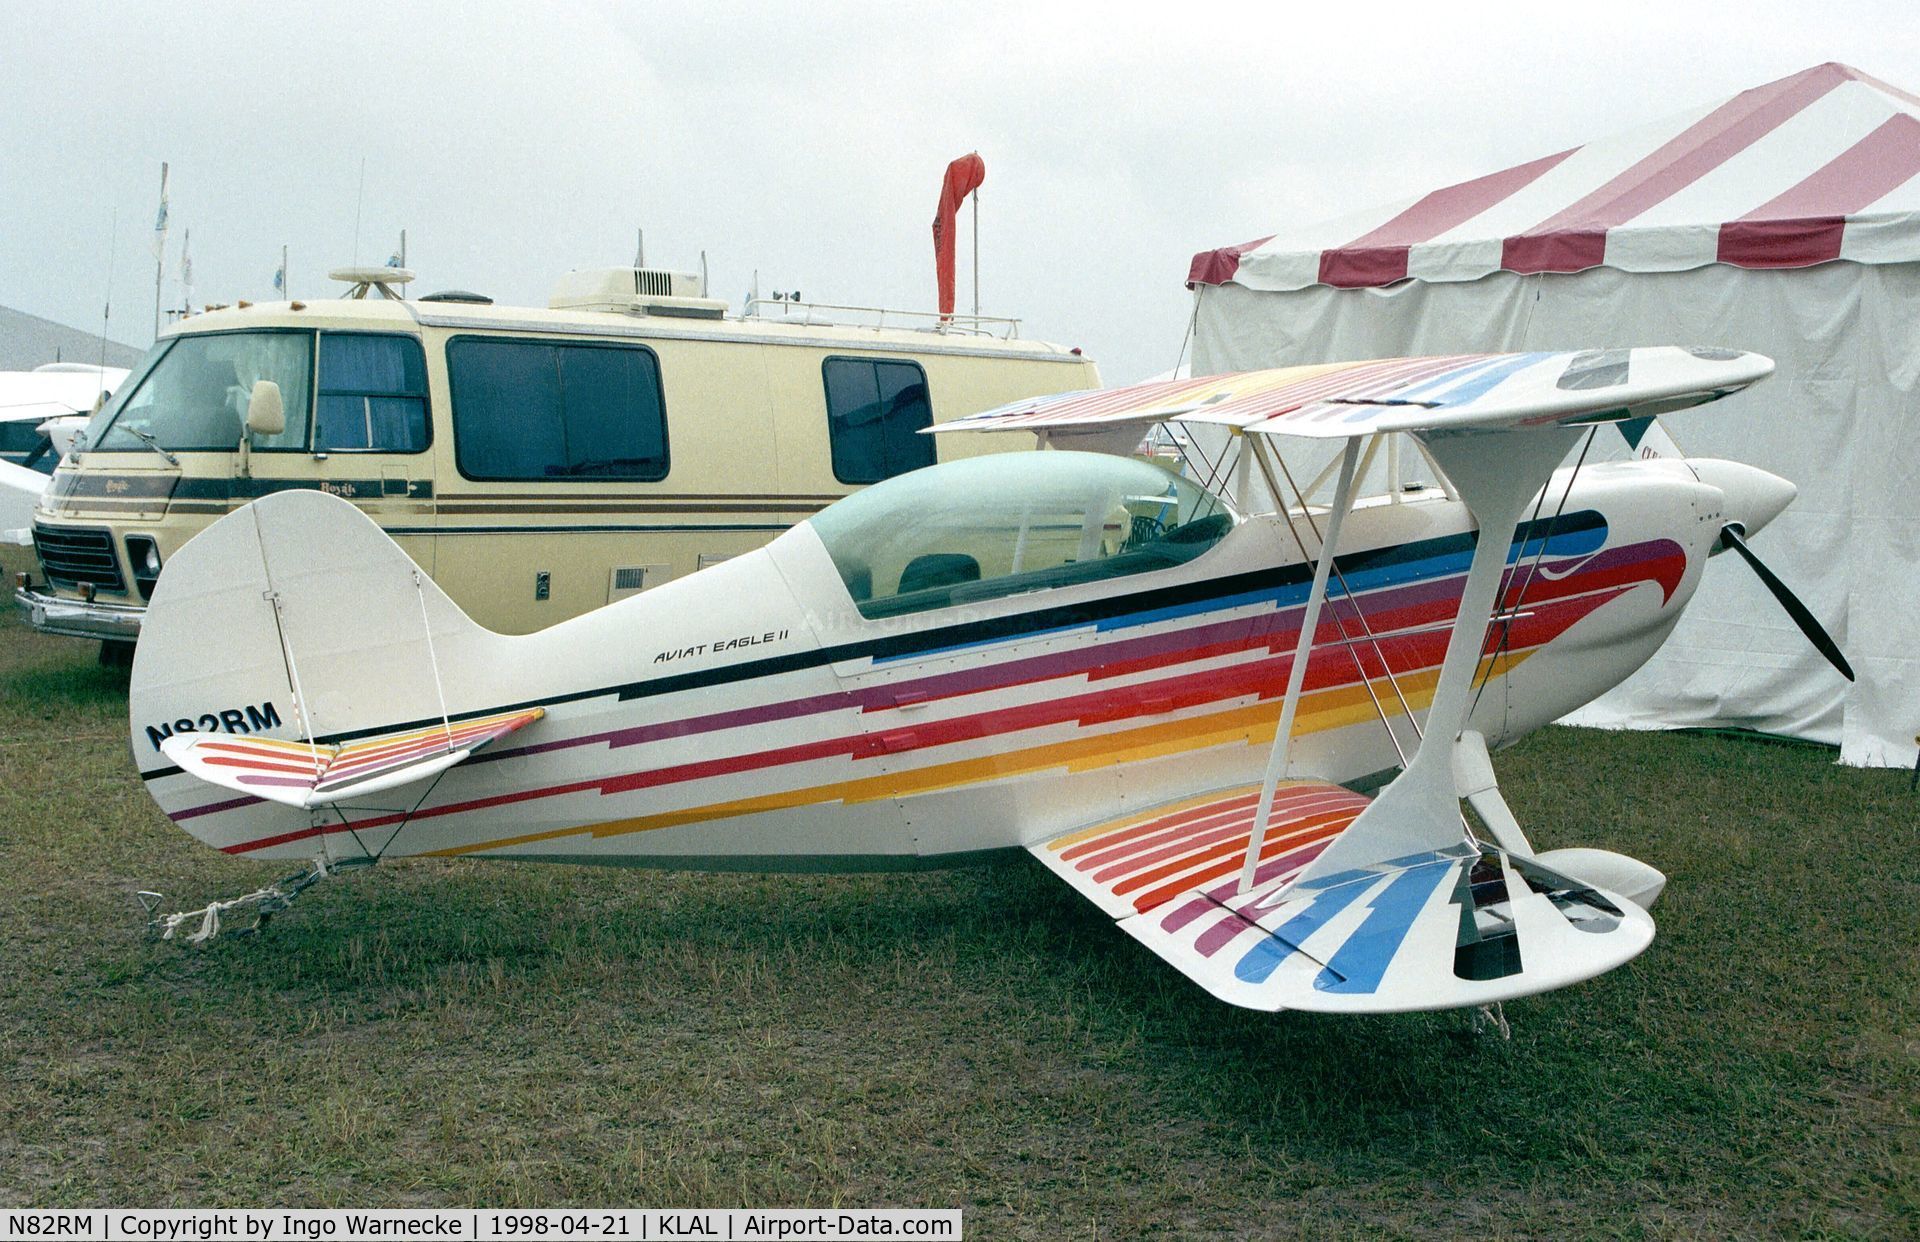 N82RM, 1998 Christen Eagle II C/N CE001MHM, Christen Eagle II at Sun 'n Fun 1998, Lakeland FL